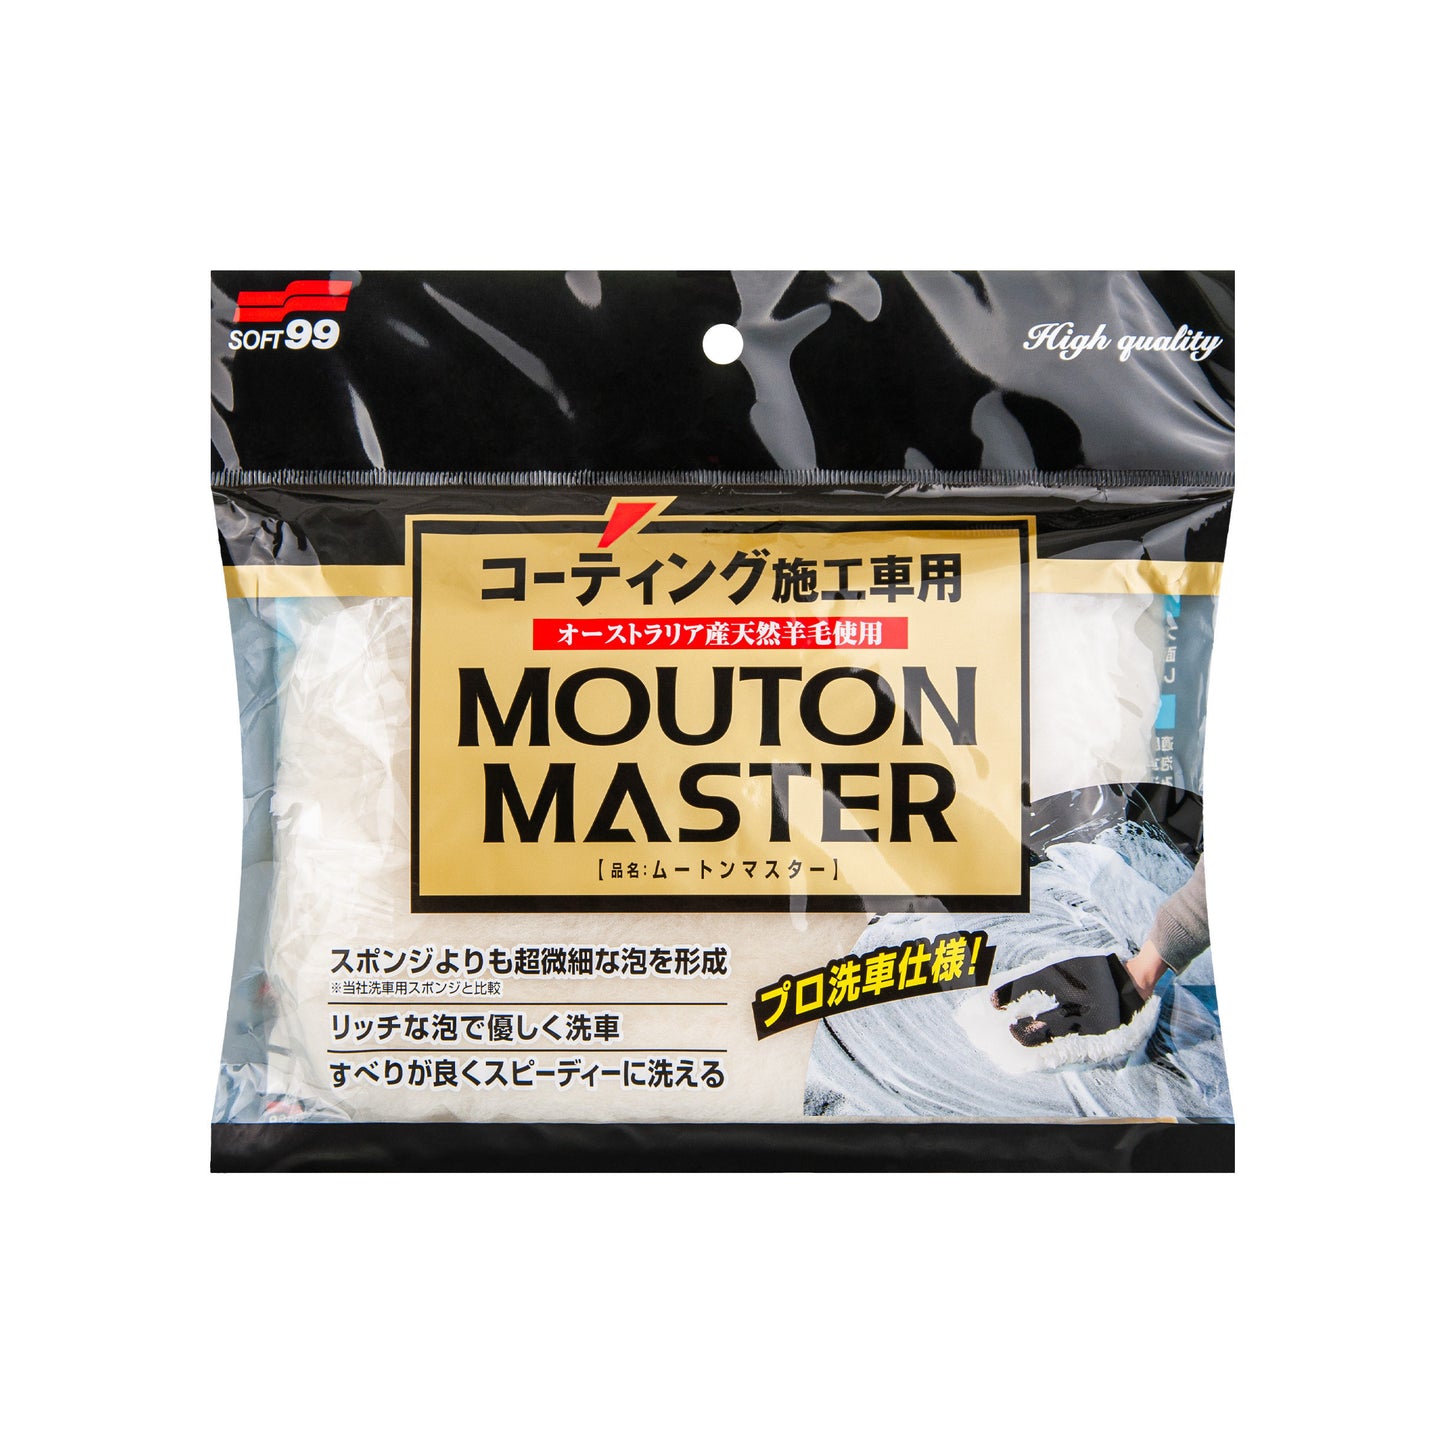 Car Wash Glove Mouton Master (weicher Waschhandschuh)